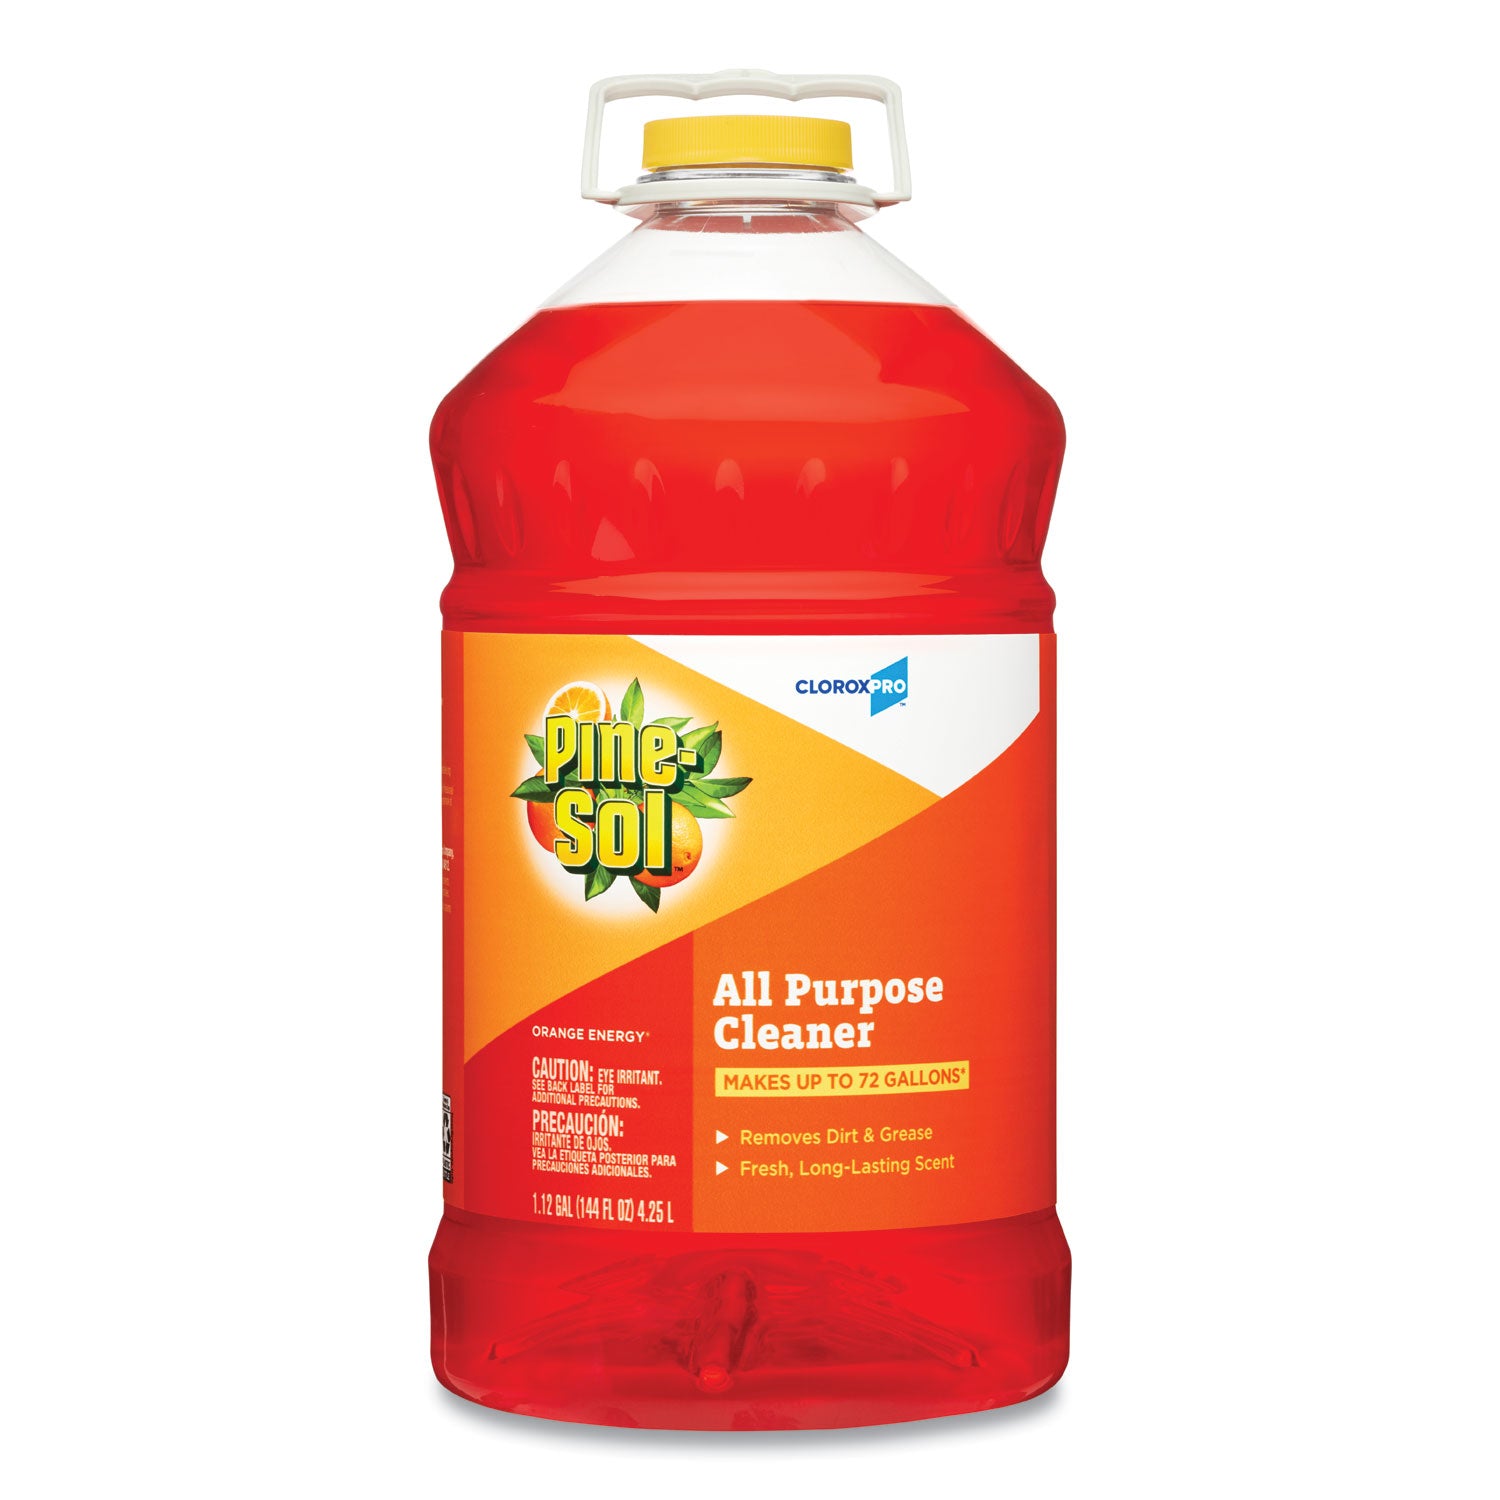 All Purpose Cleaner, Orange Energy, 144 oz Bottle - 